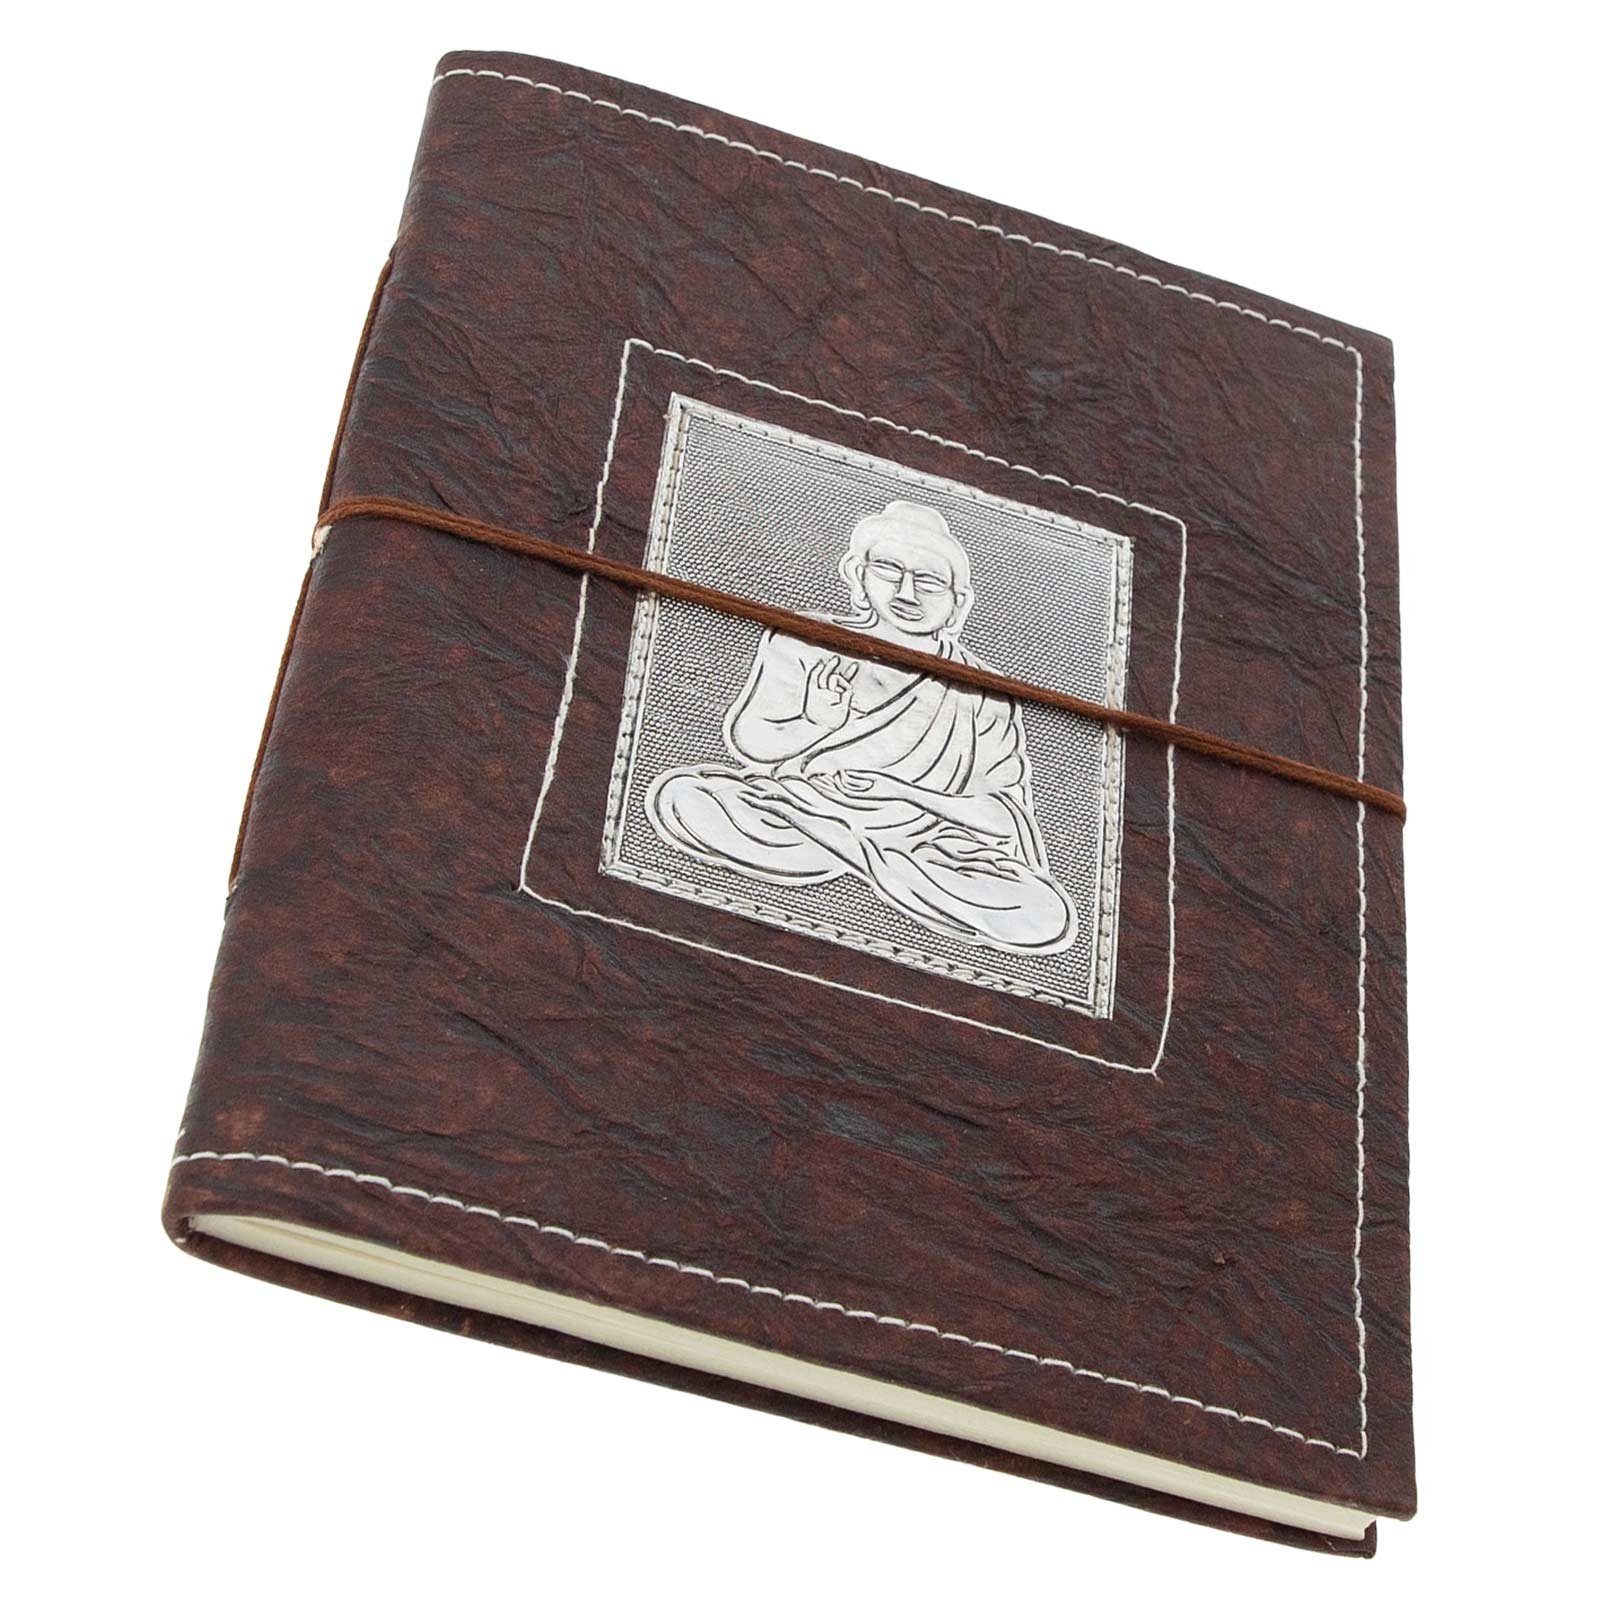 KUNST UND MAGIE Notizbuch Buddha Tagebuch Poesiealbum Notizbuch handgefertigt-Geprägtes 20x15cm